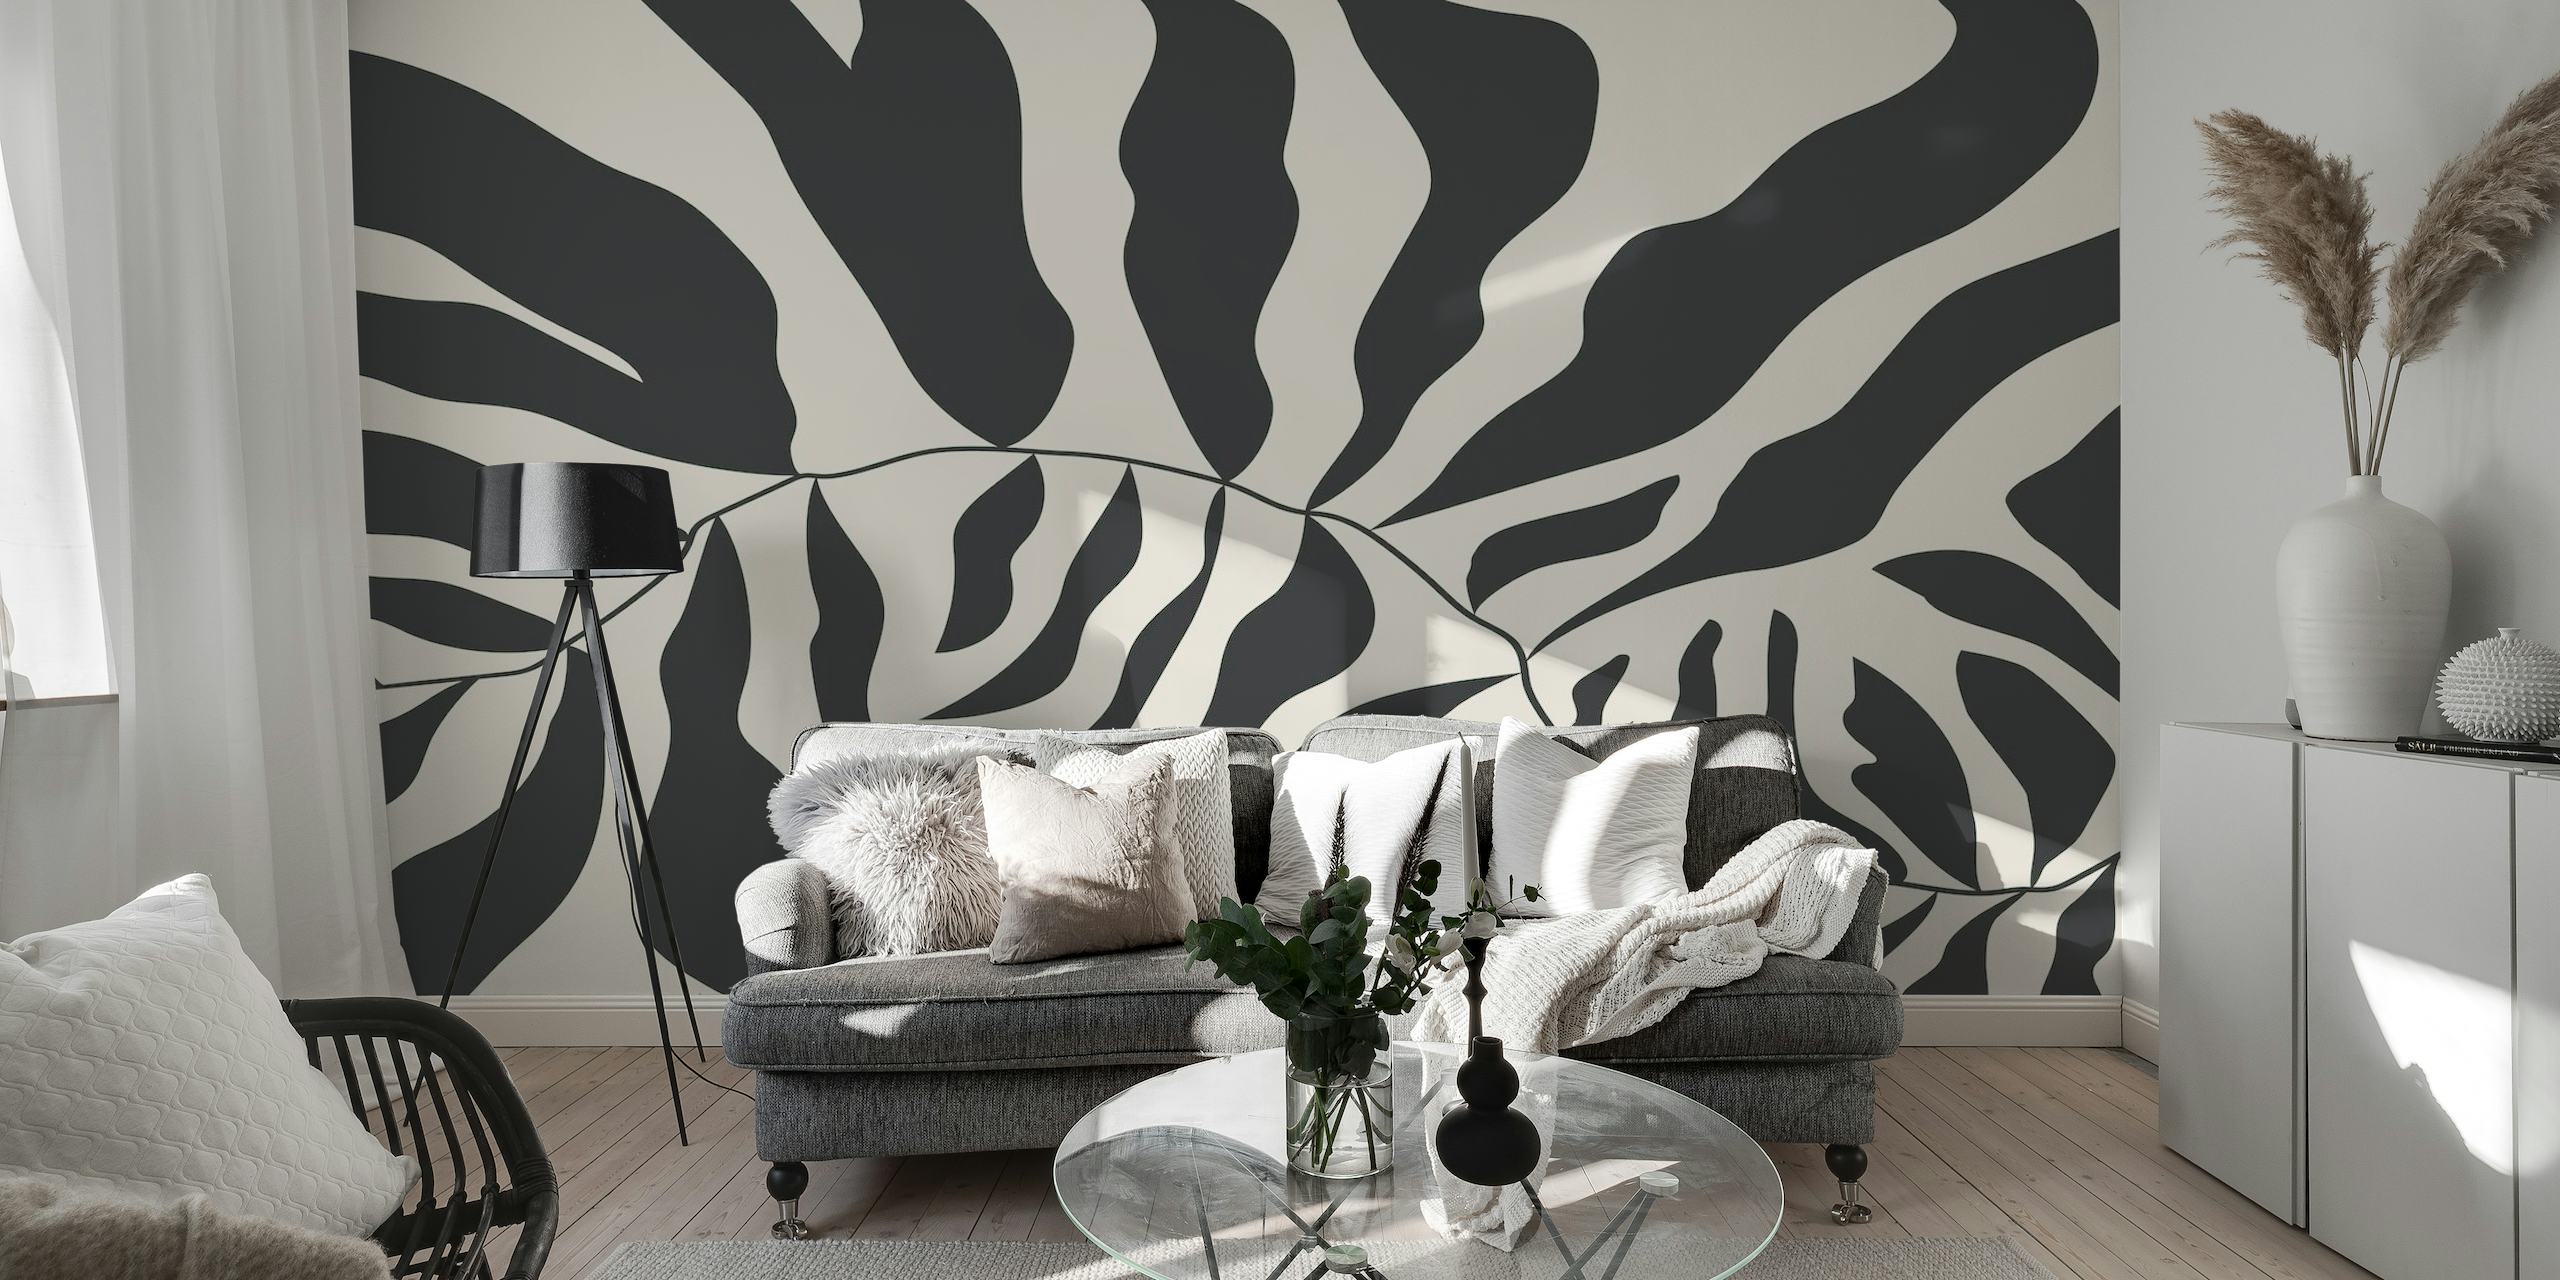 Mural de parede abstrato em preto e branco estilo Matisse representando formas orgânicas